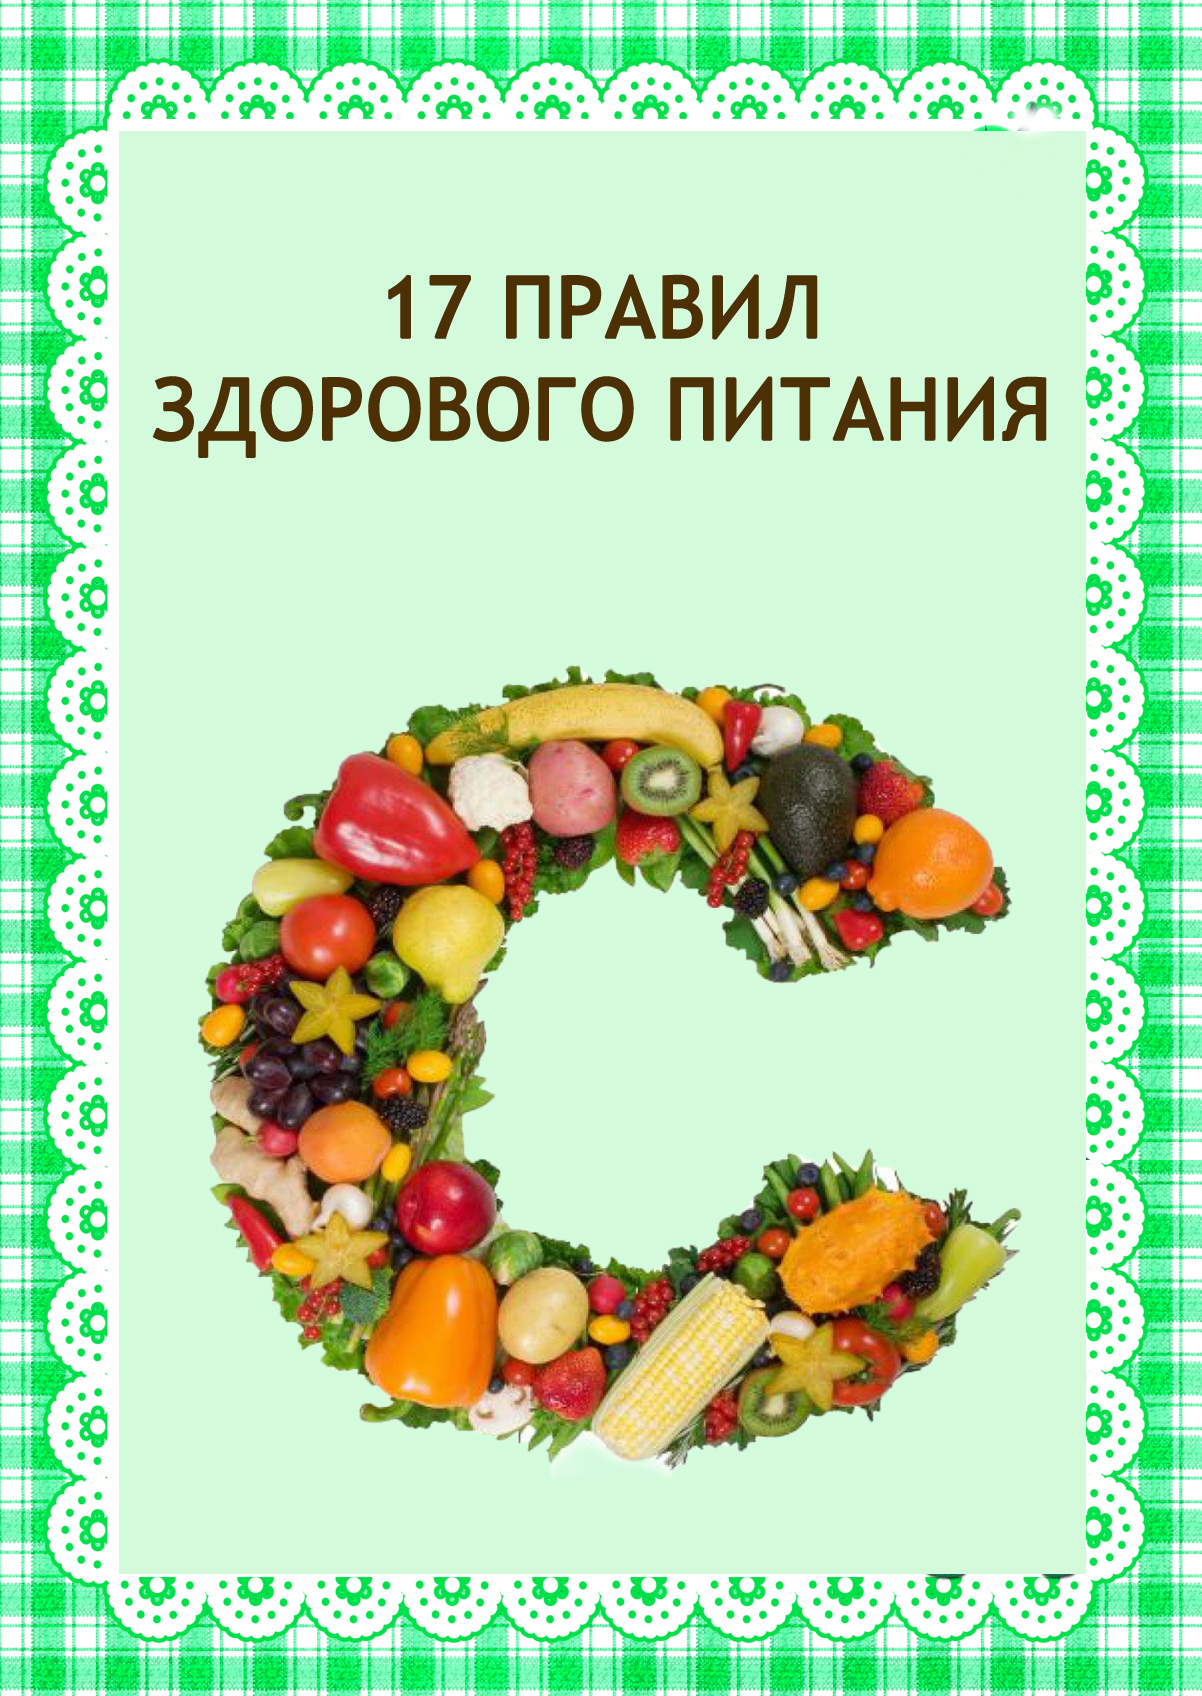 5dd0b54072e01 - Правила здорового питания Пословицы